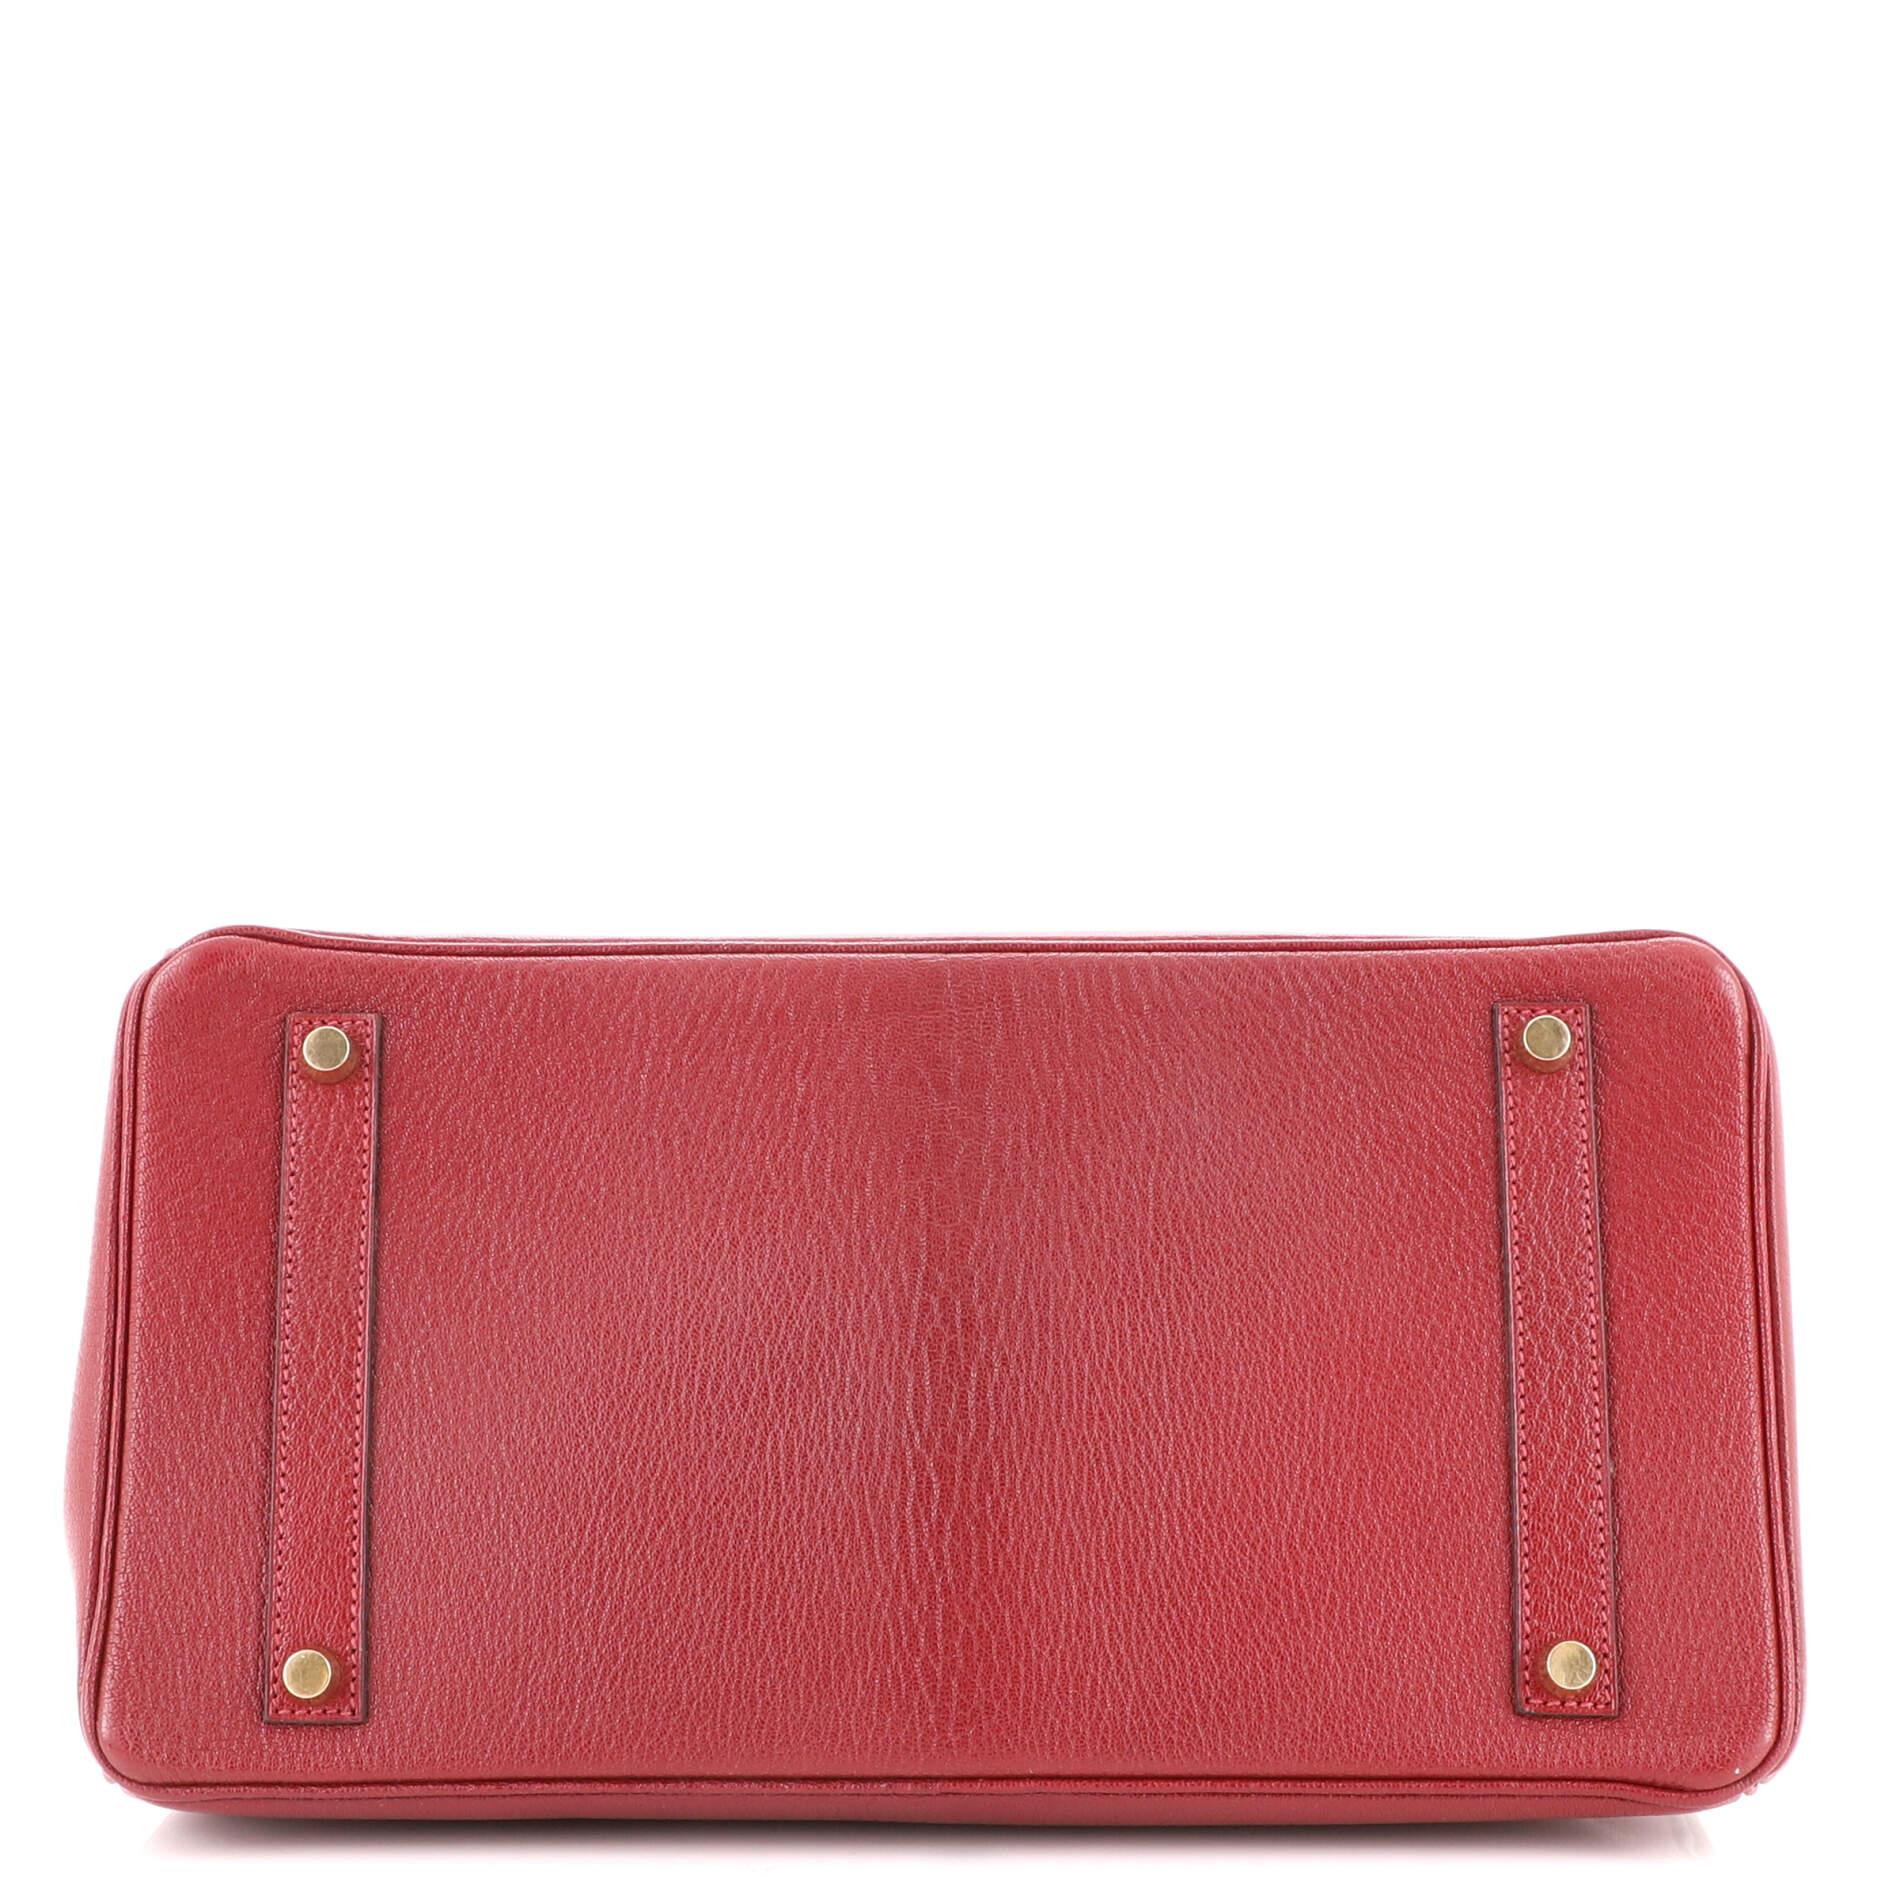 Hermes Birkin Handbag Rouge H Chevre de Coromandel with Gold Hardware 35 1